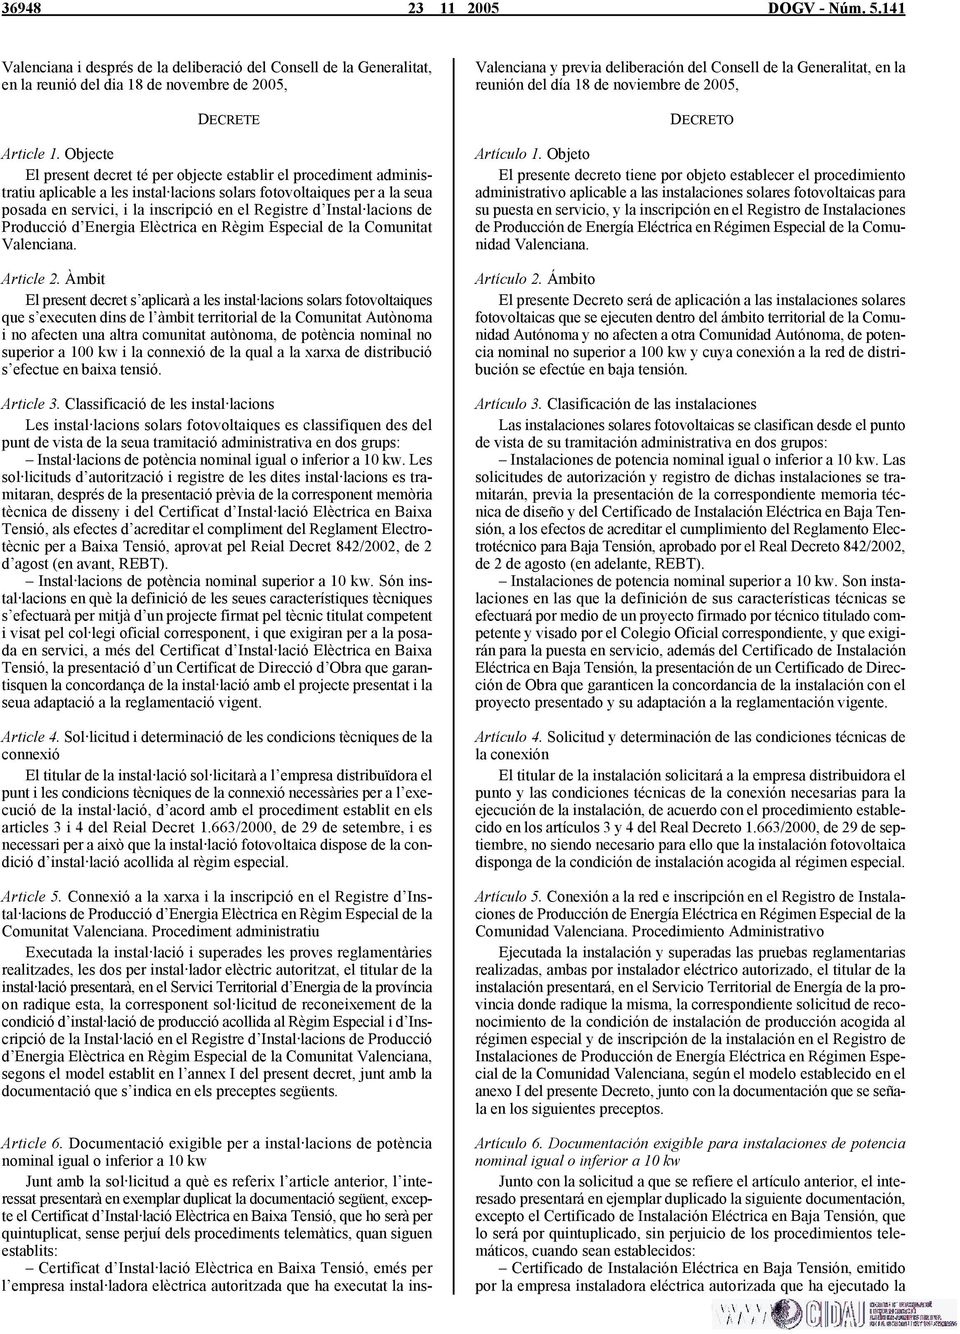 Instal lacions de Producció d Energia Elèctrica en Règim Especial de la Comunitat Valenciana. Article 2.